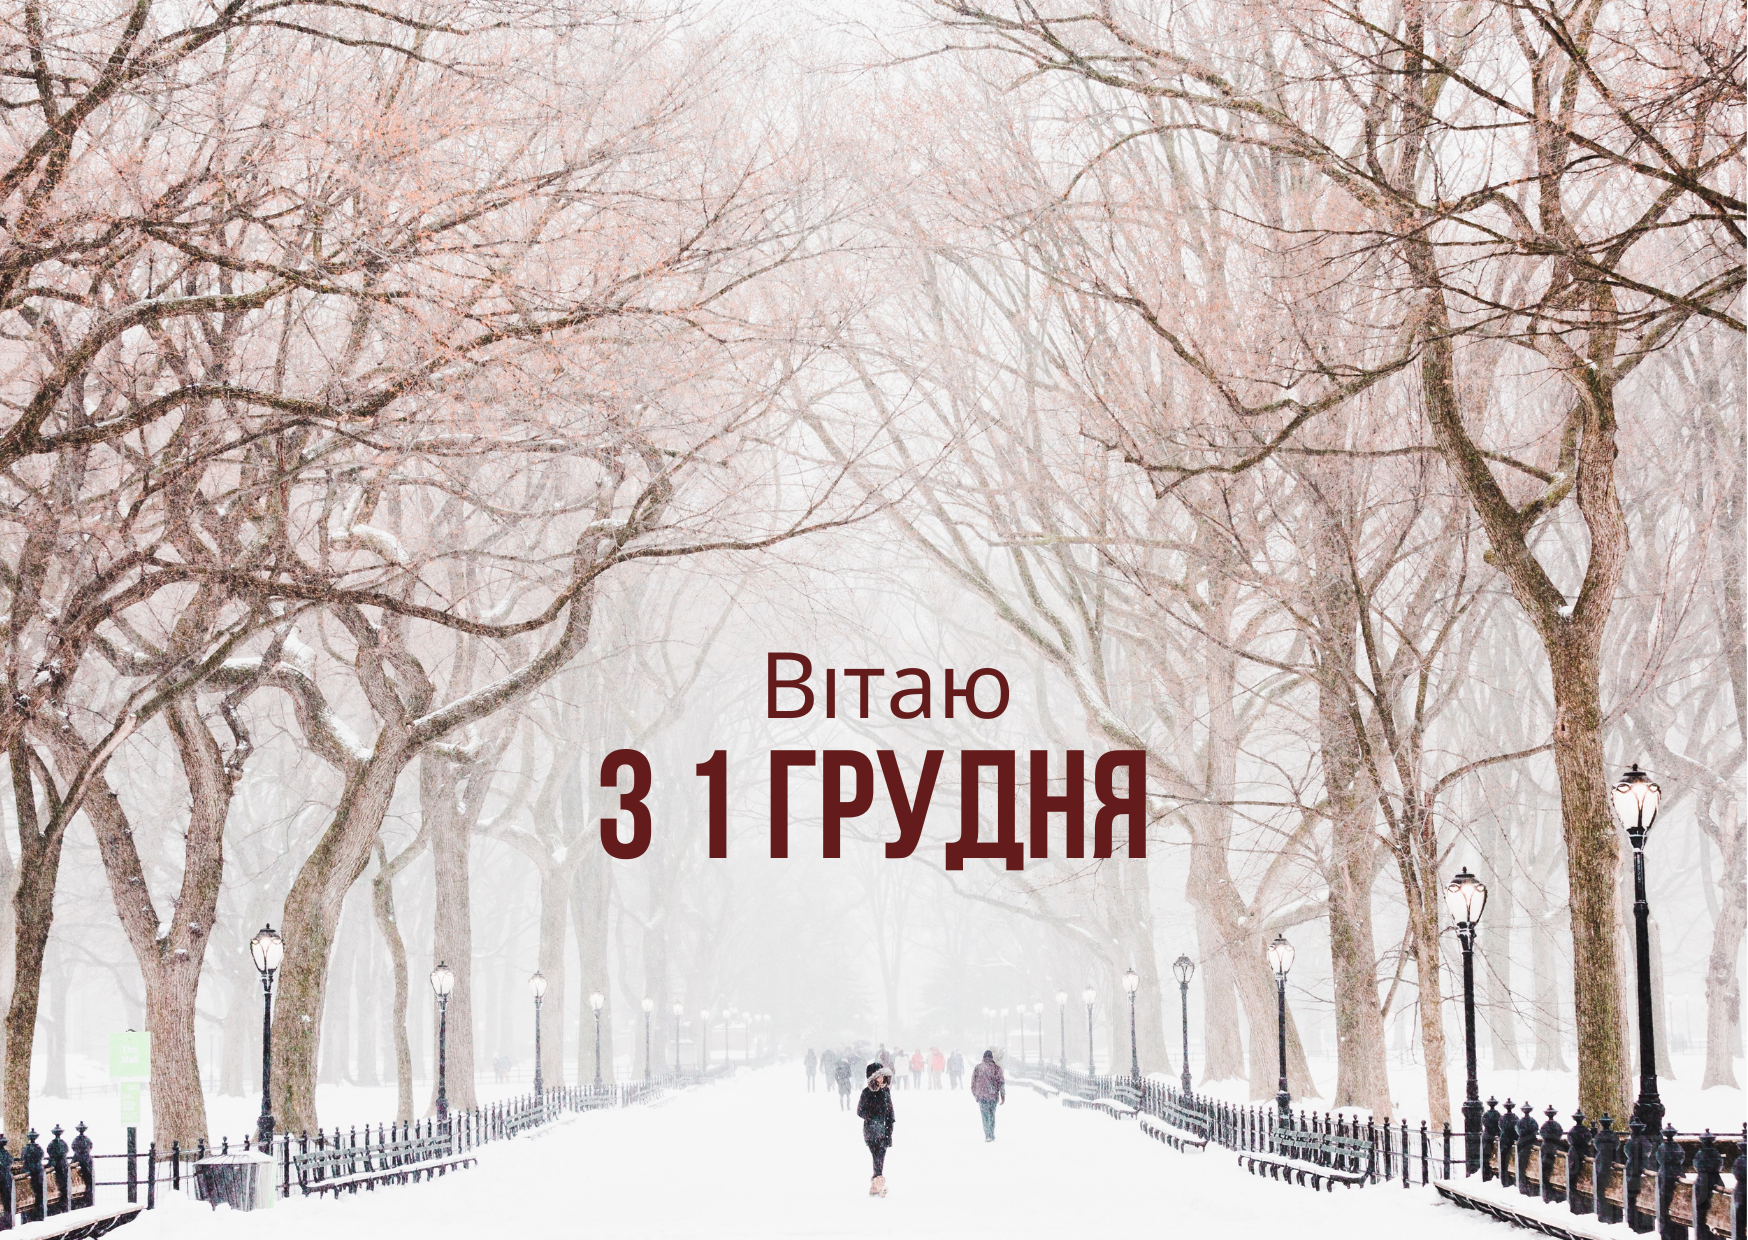 1 декабря ❄ красивое начало зимы в прозе и картинках ❄⛄